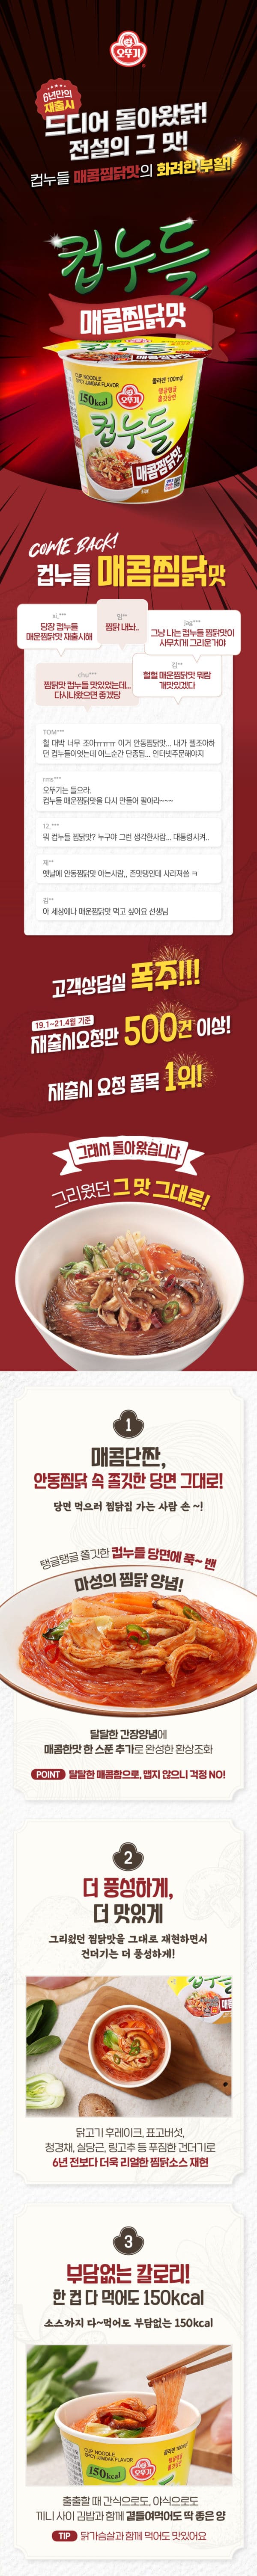 韓國食品-[오뚜기] 컵누들 [매운찜닭맛] 43.5g 15개